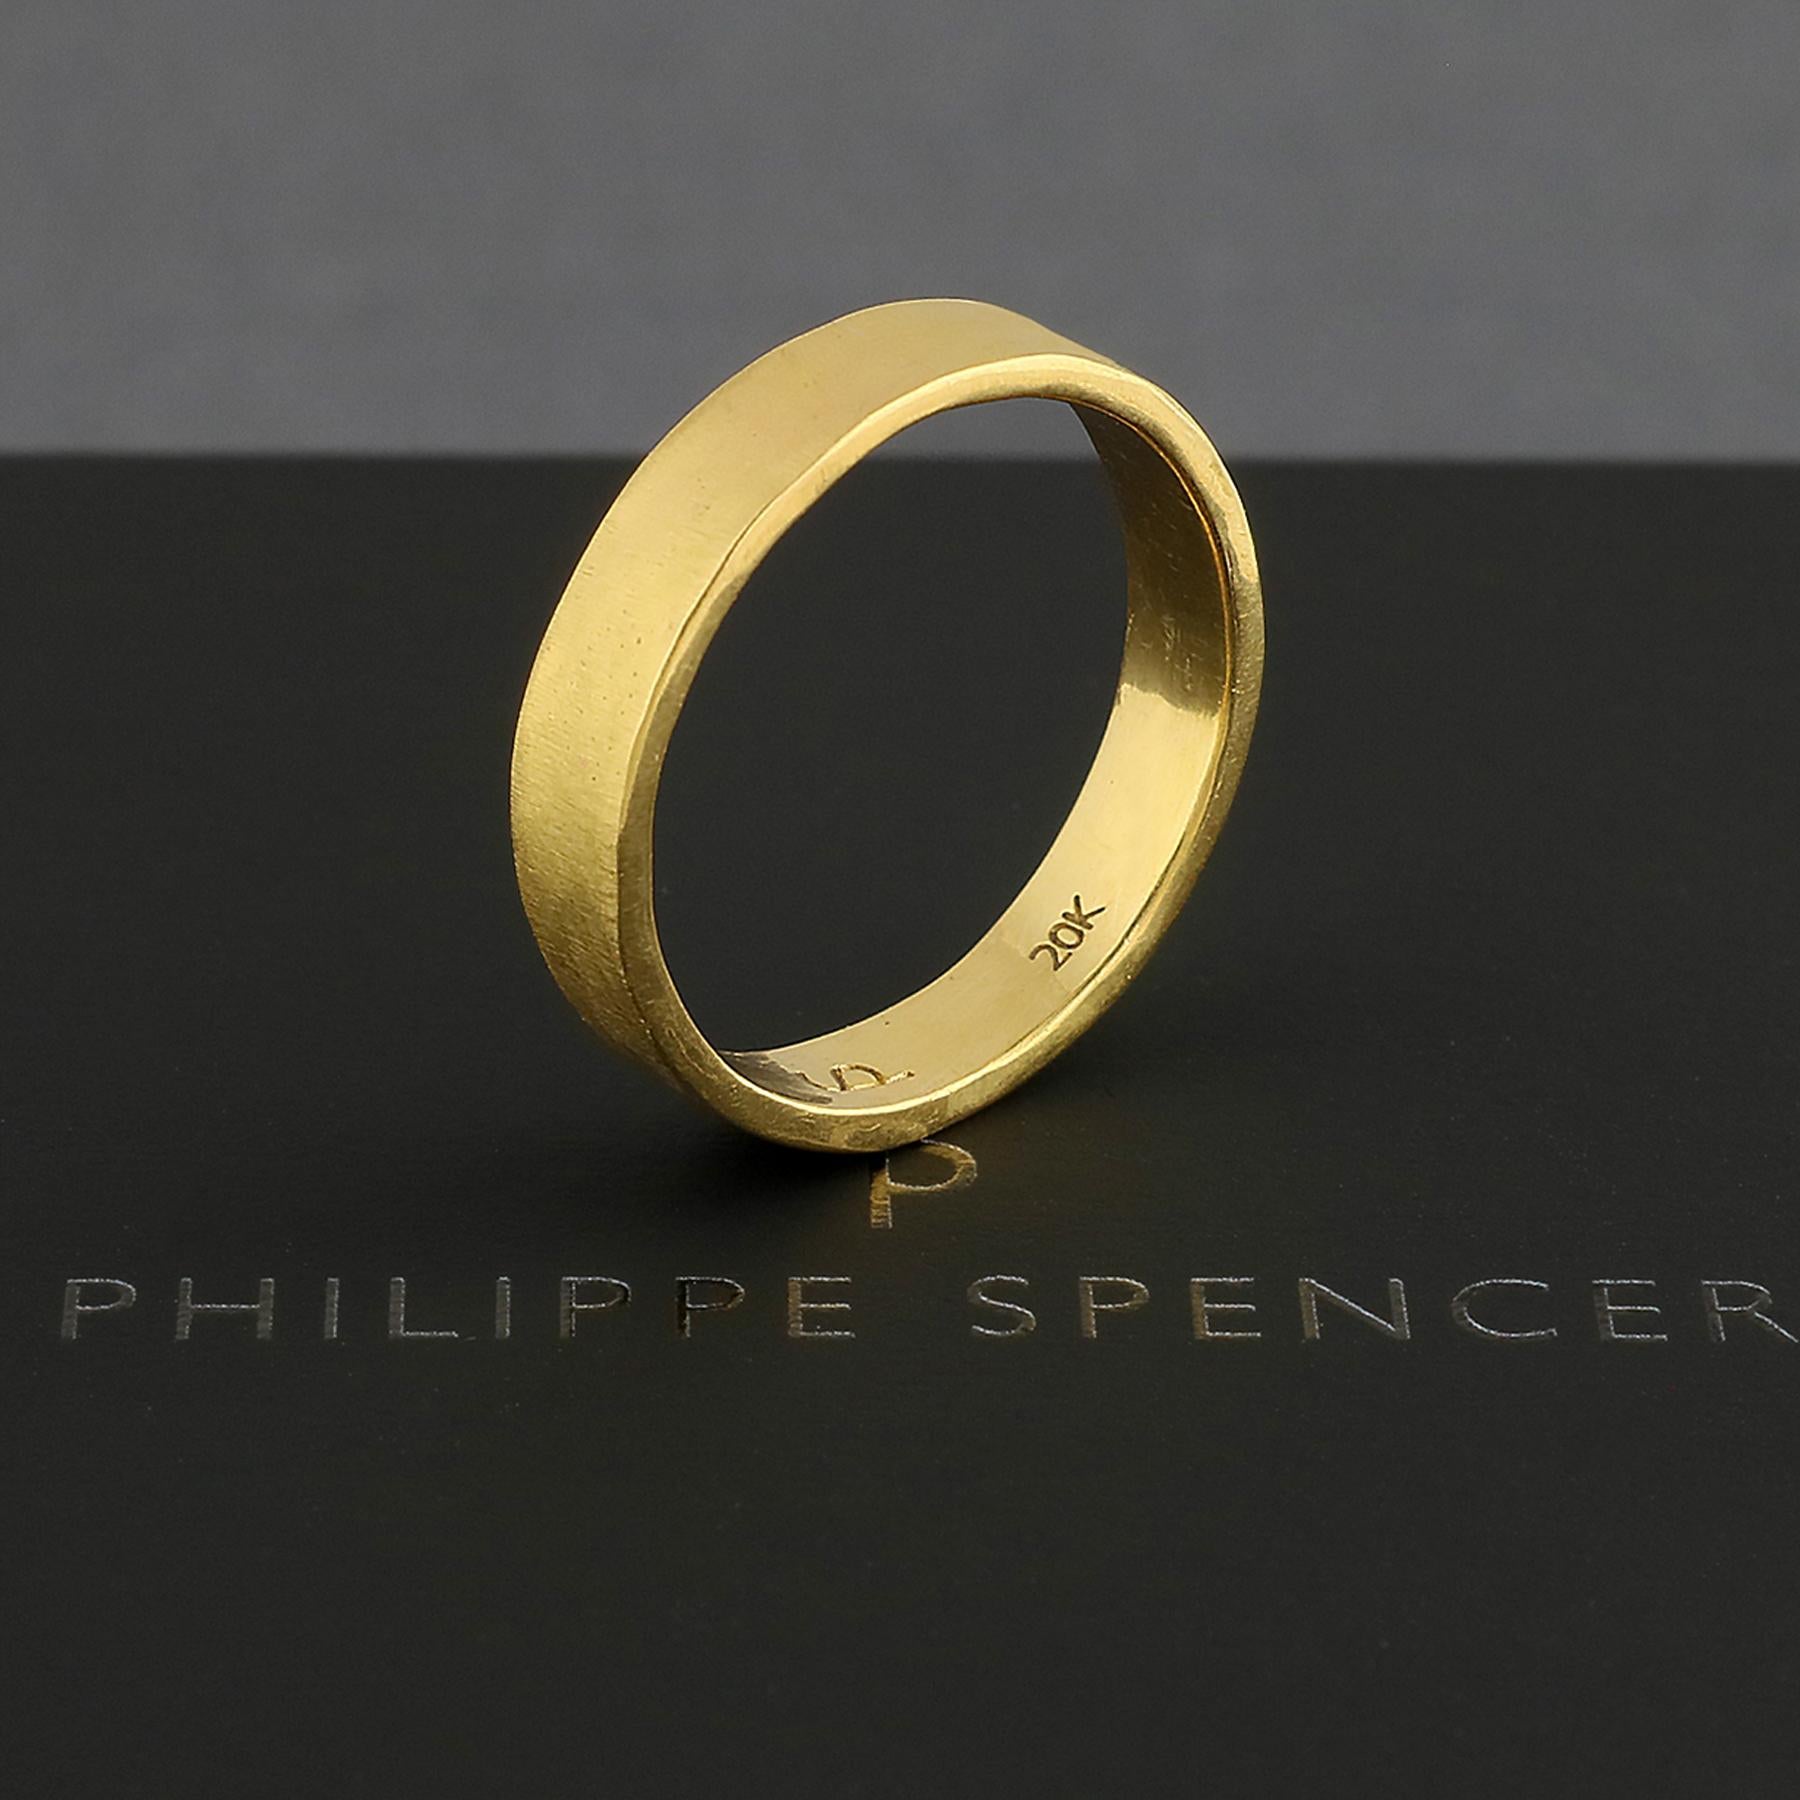 PHILIPPE-SPENCER - Bracelet en or massif 20K forgé à la main de 4 X 1,25 mm. Extérieur fortement mat, intérieur poli miroir.  Chacun d'entre eux est une œuvre d'art unique. Ce bracelet PHILIPPE SPENCER en or massif 20 carats fait à la main est